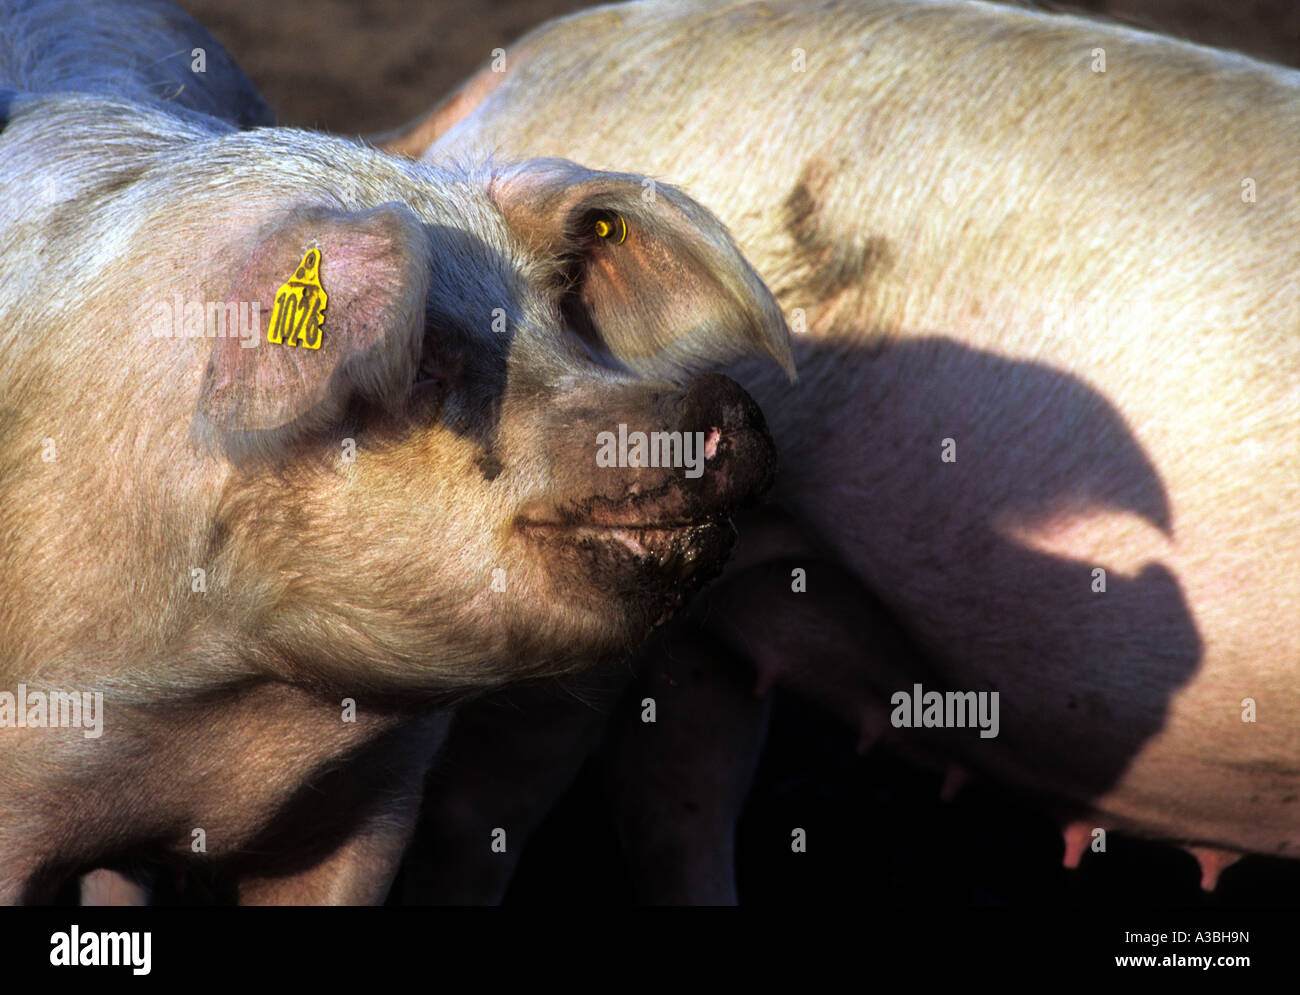 Freerange pigs, Iken, Suffolk, UK. Stock Photo